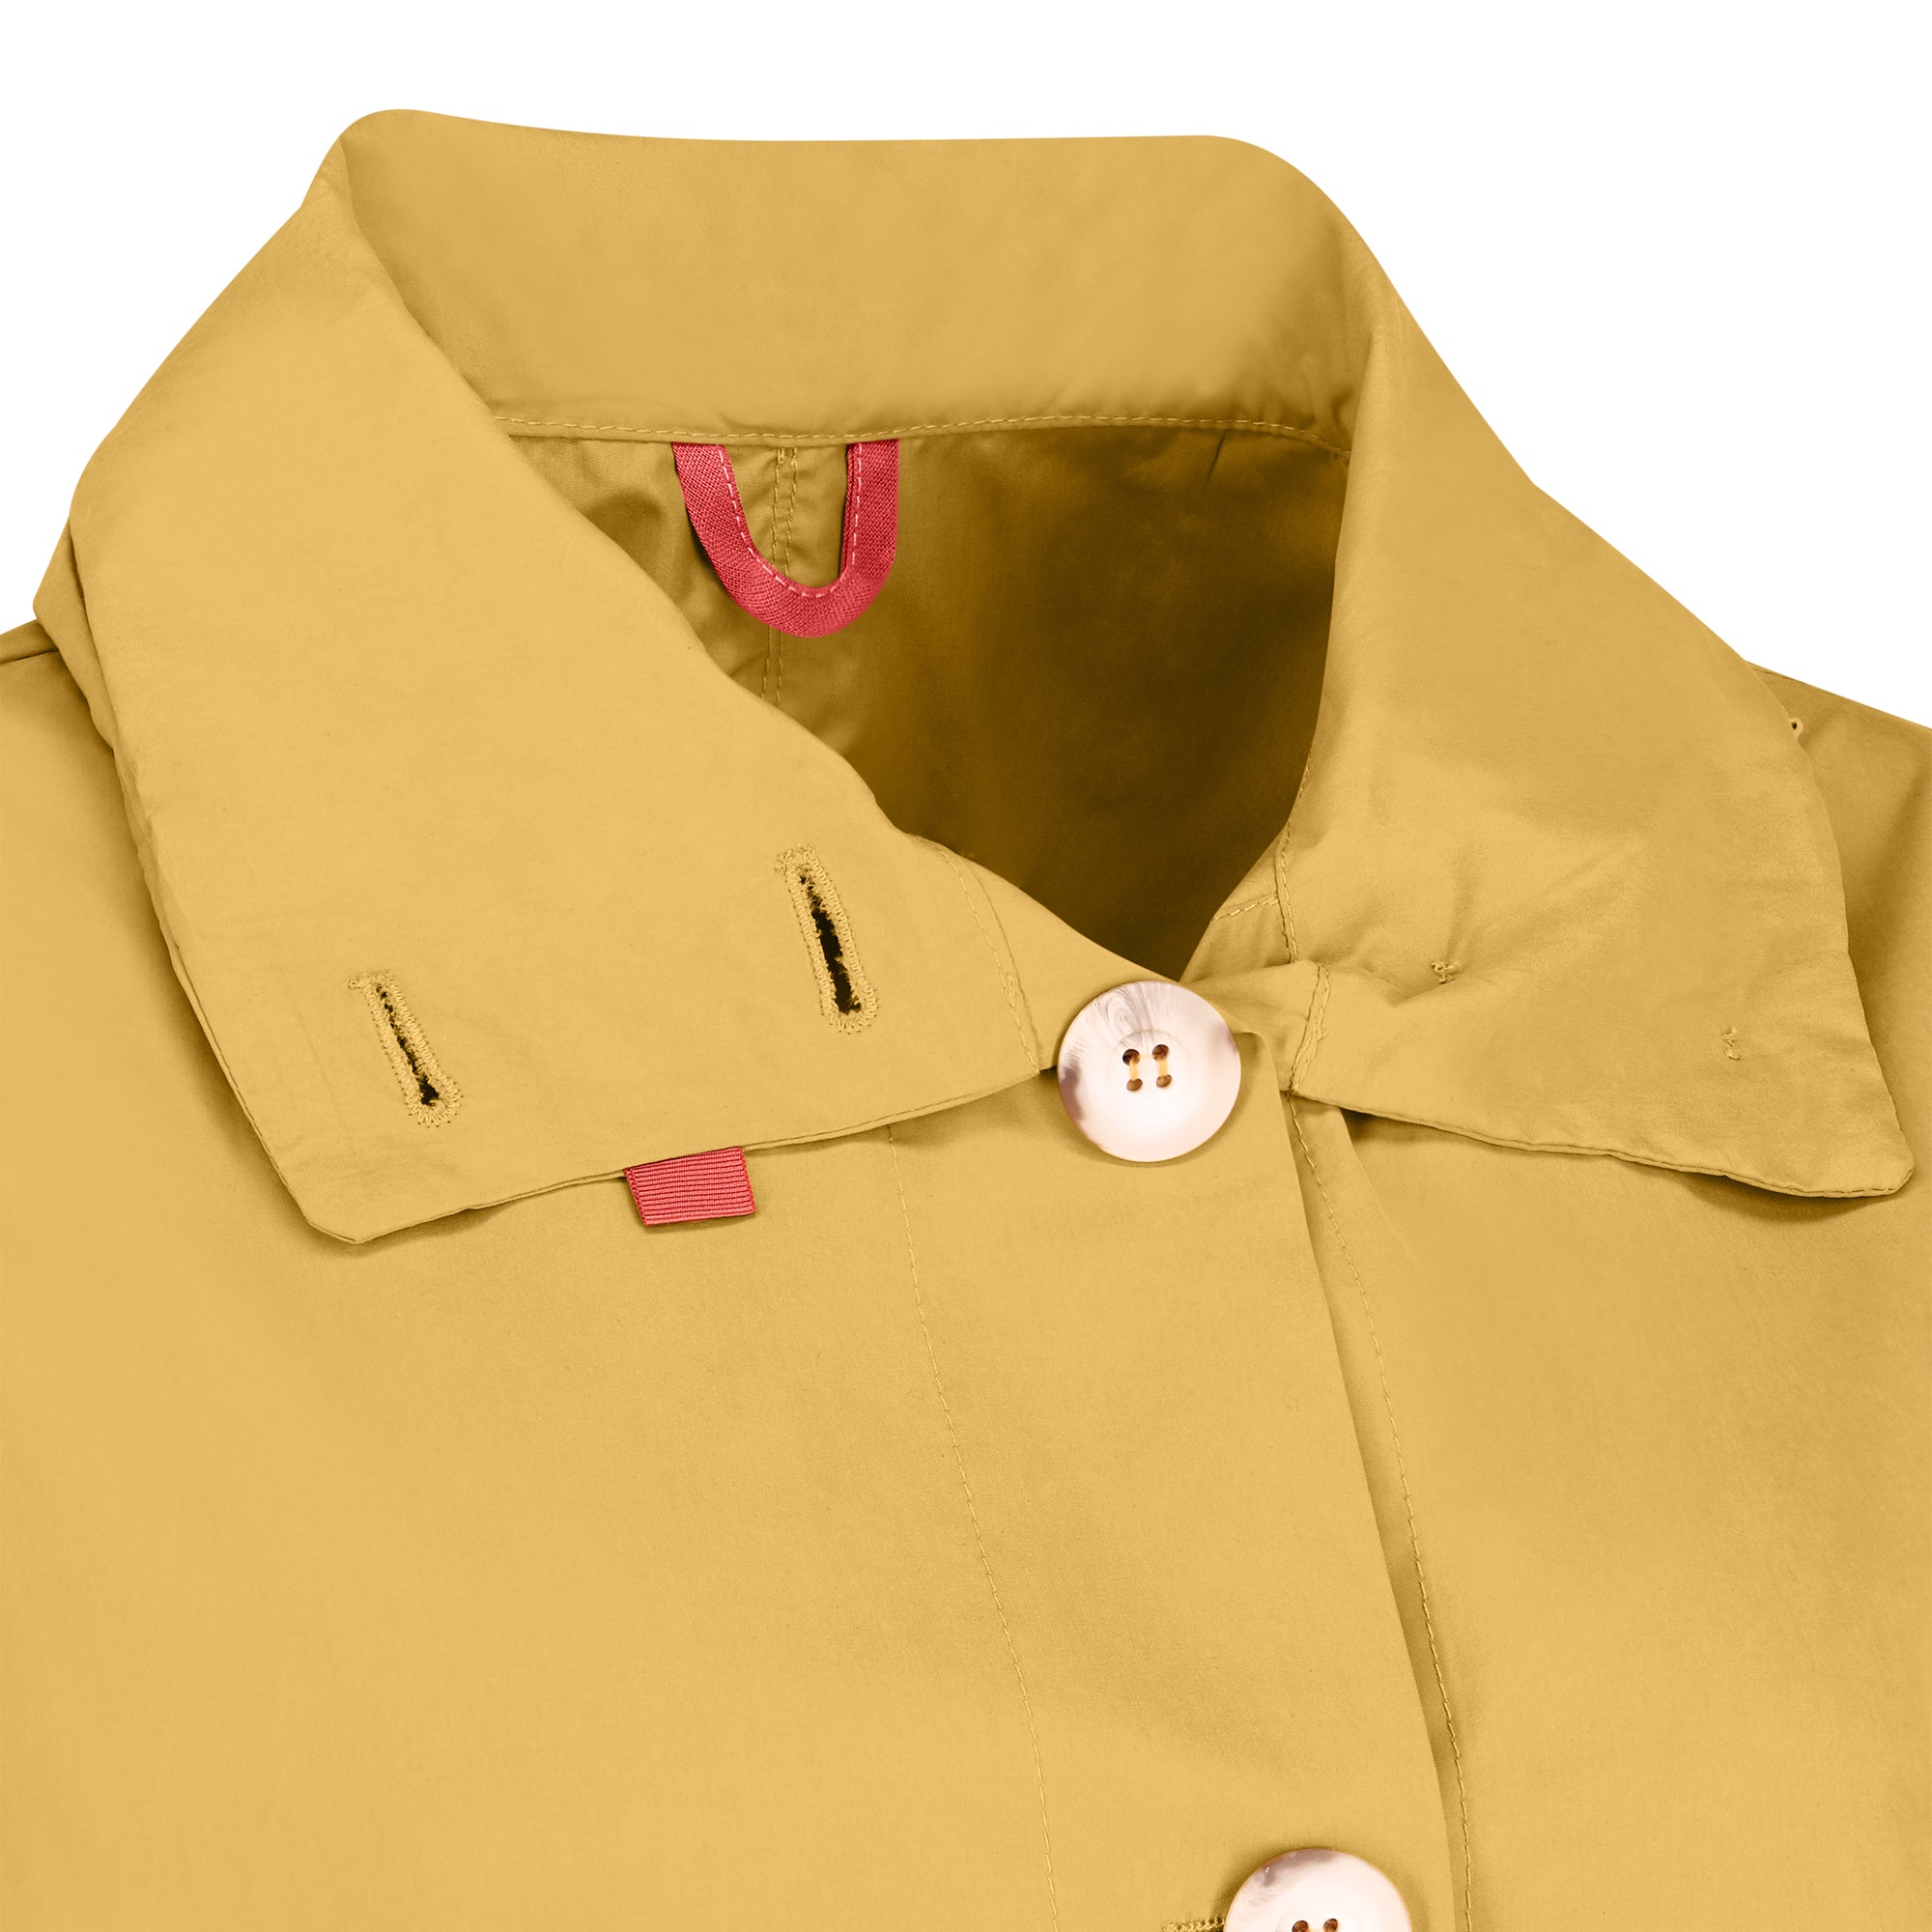 Bise raincoat - Curry color - neckline detail